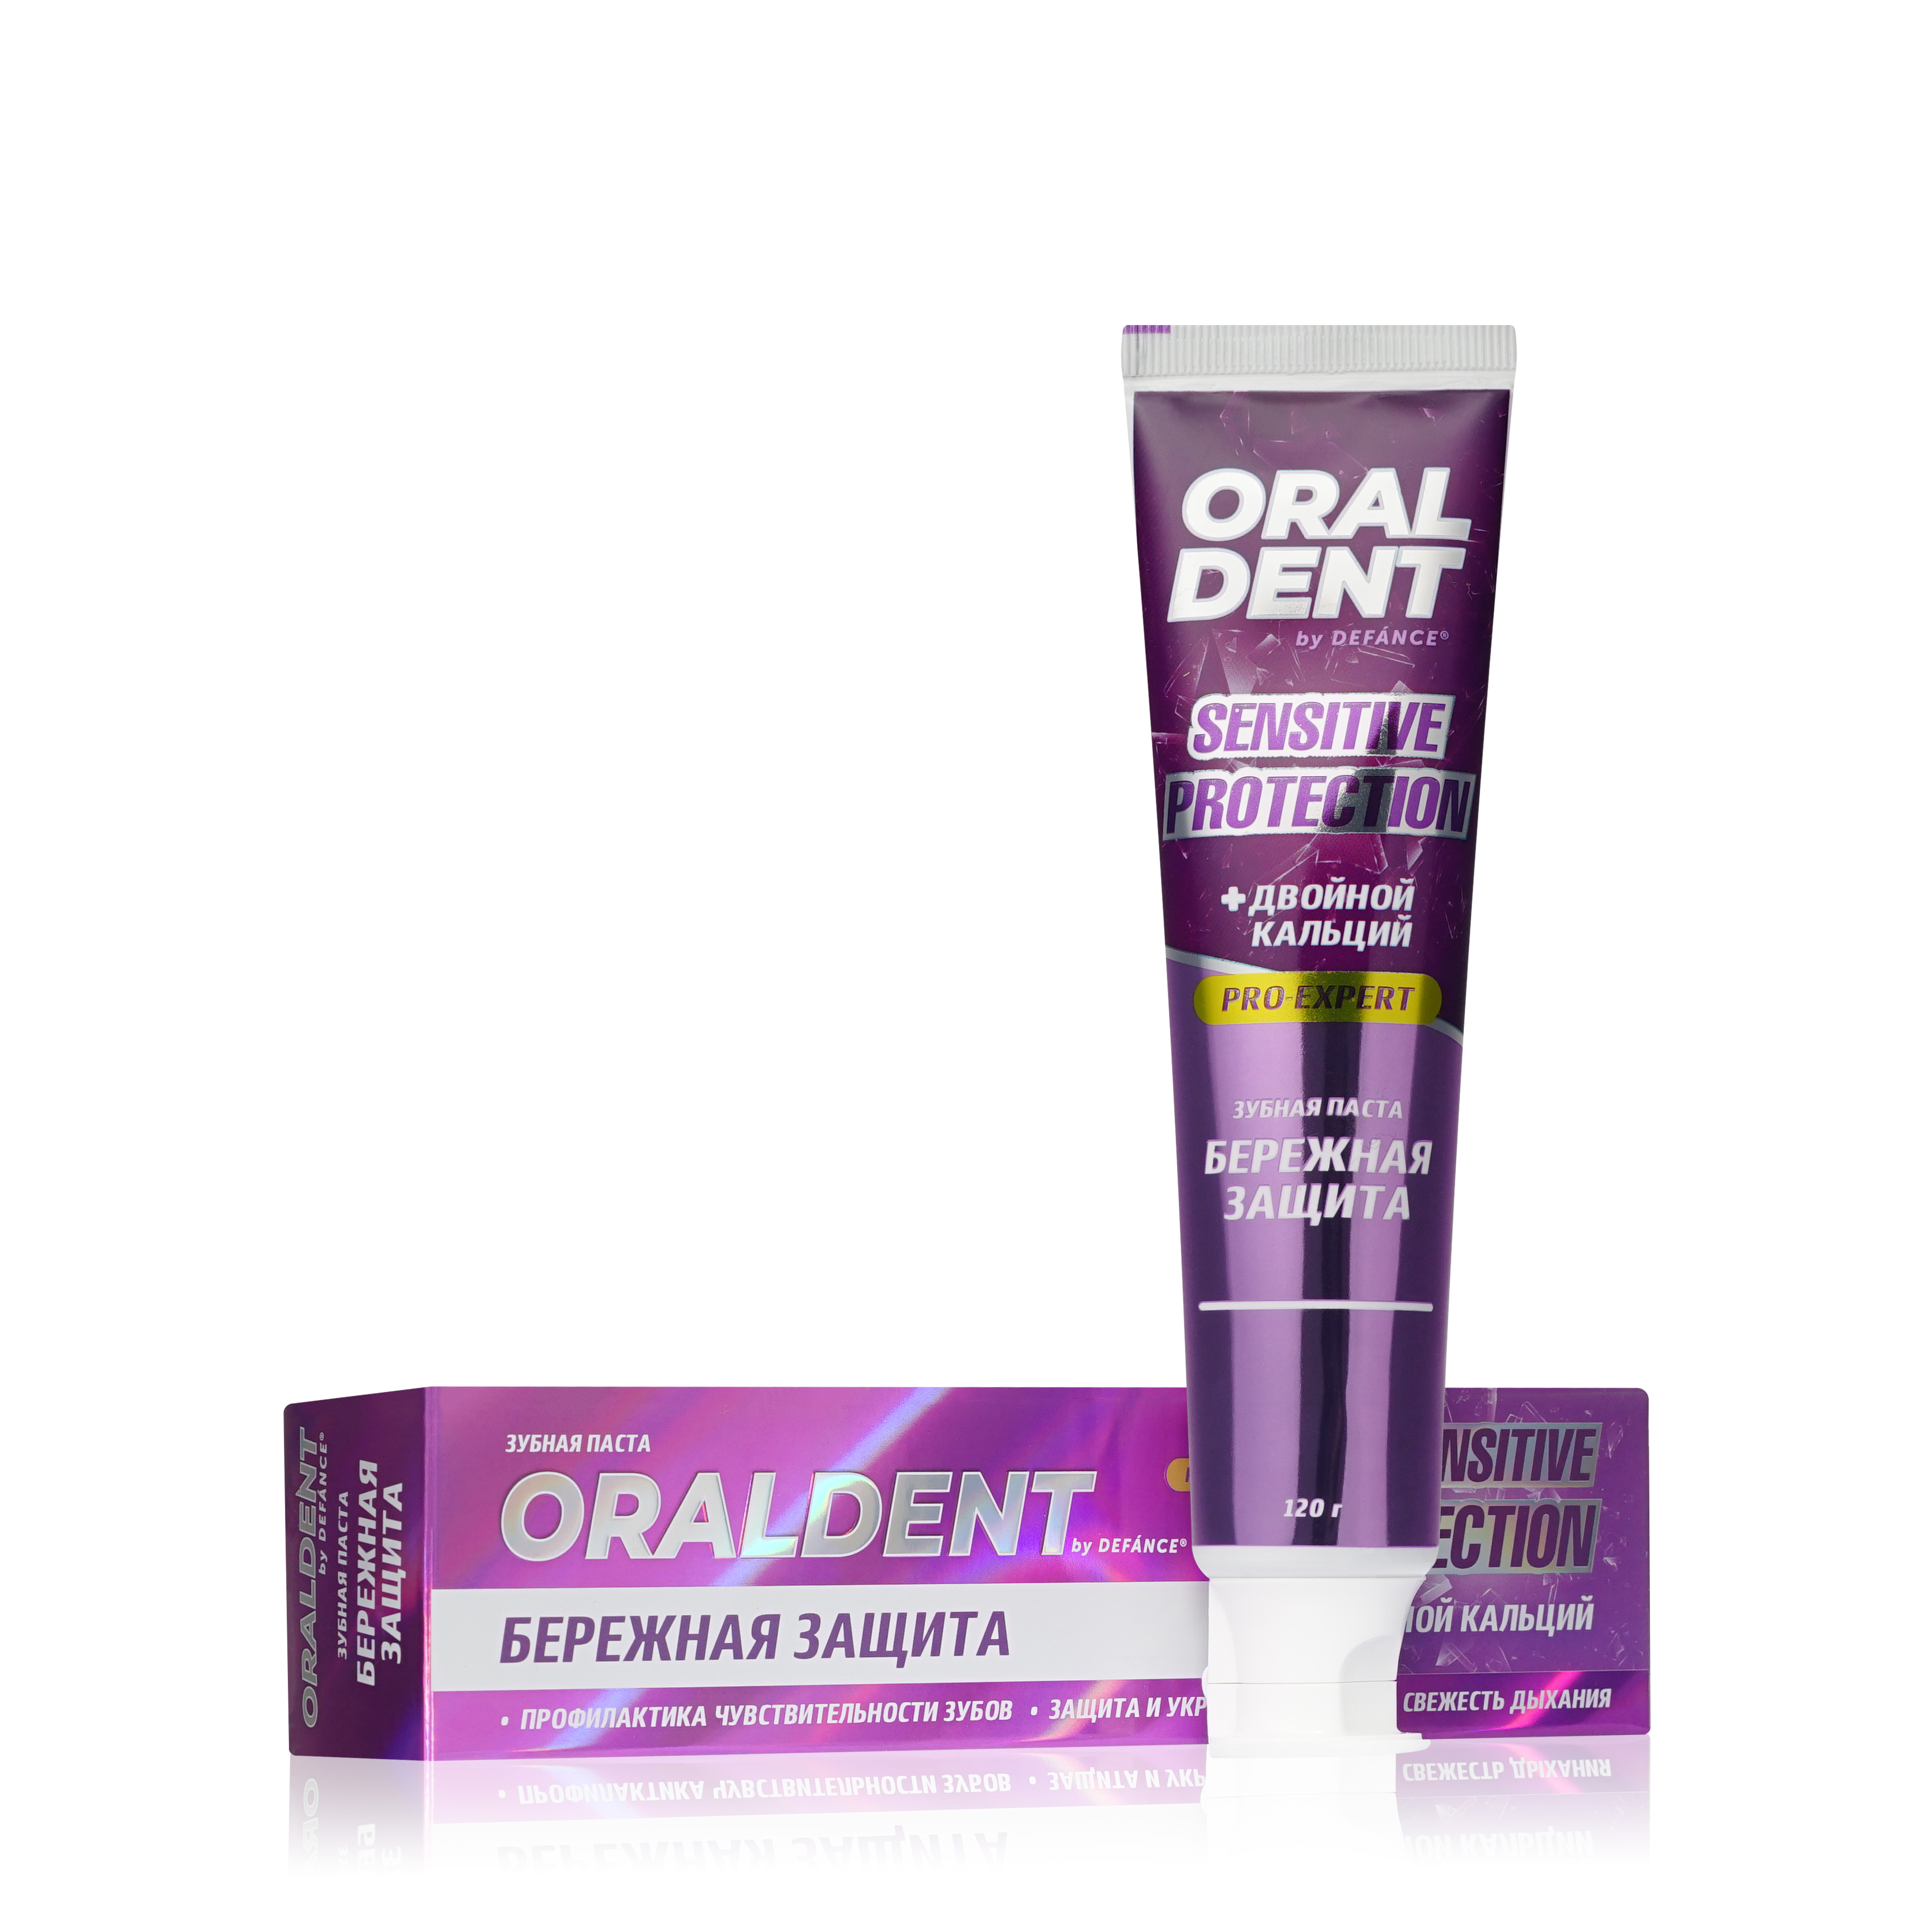 Зубная паста Defance Oraldent для чувствительных зубов Sensitive Protection, 120 г зубная паста pomorin regular caries protection защита от кариеса 100мл